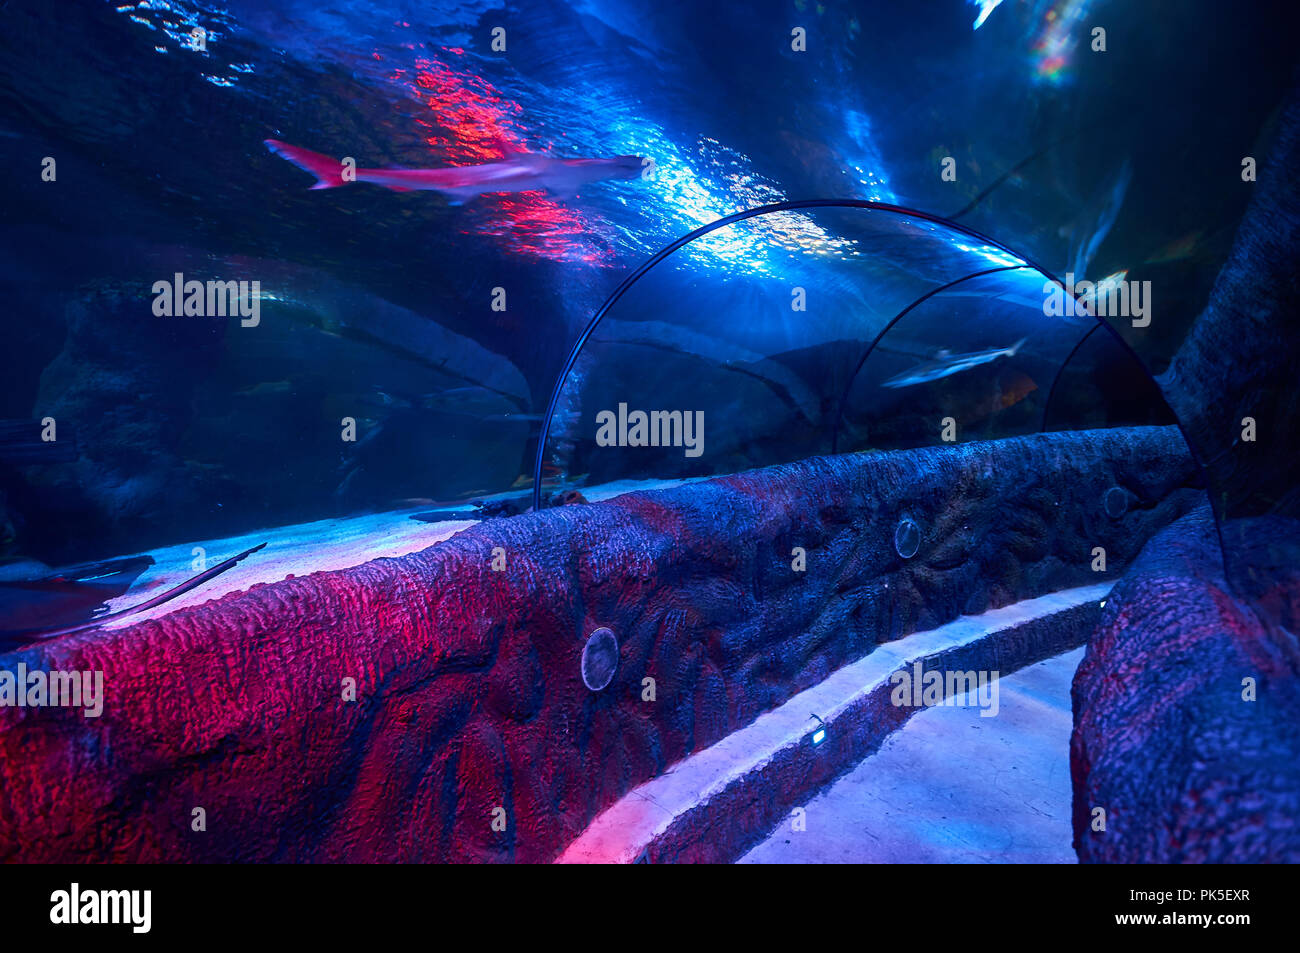 Ozean Tunnel - ein Unterwasser Besucher Attraktion im Loch Lomond Sea Life Aquarium erlaubt dem Besucher das Meer Kreaturen aus der Nähe zu bewundern. Stockfoto